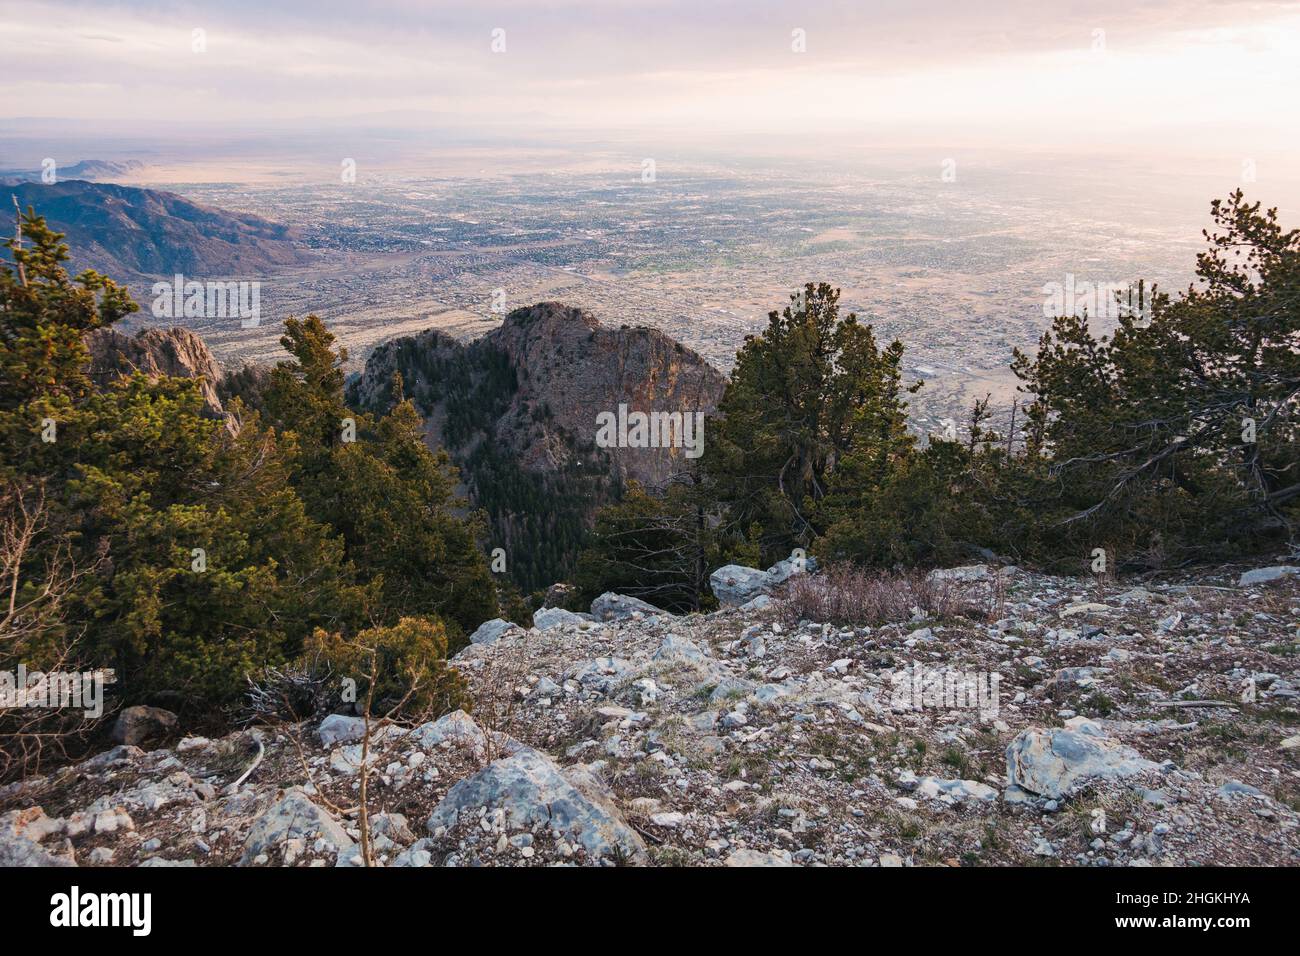 La ciudad de Albuquerque, Nuevo México, vista desde la cima de las montañas Sandia al atardecer Foto de stock